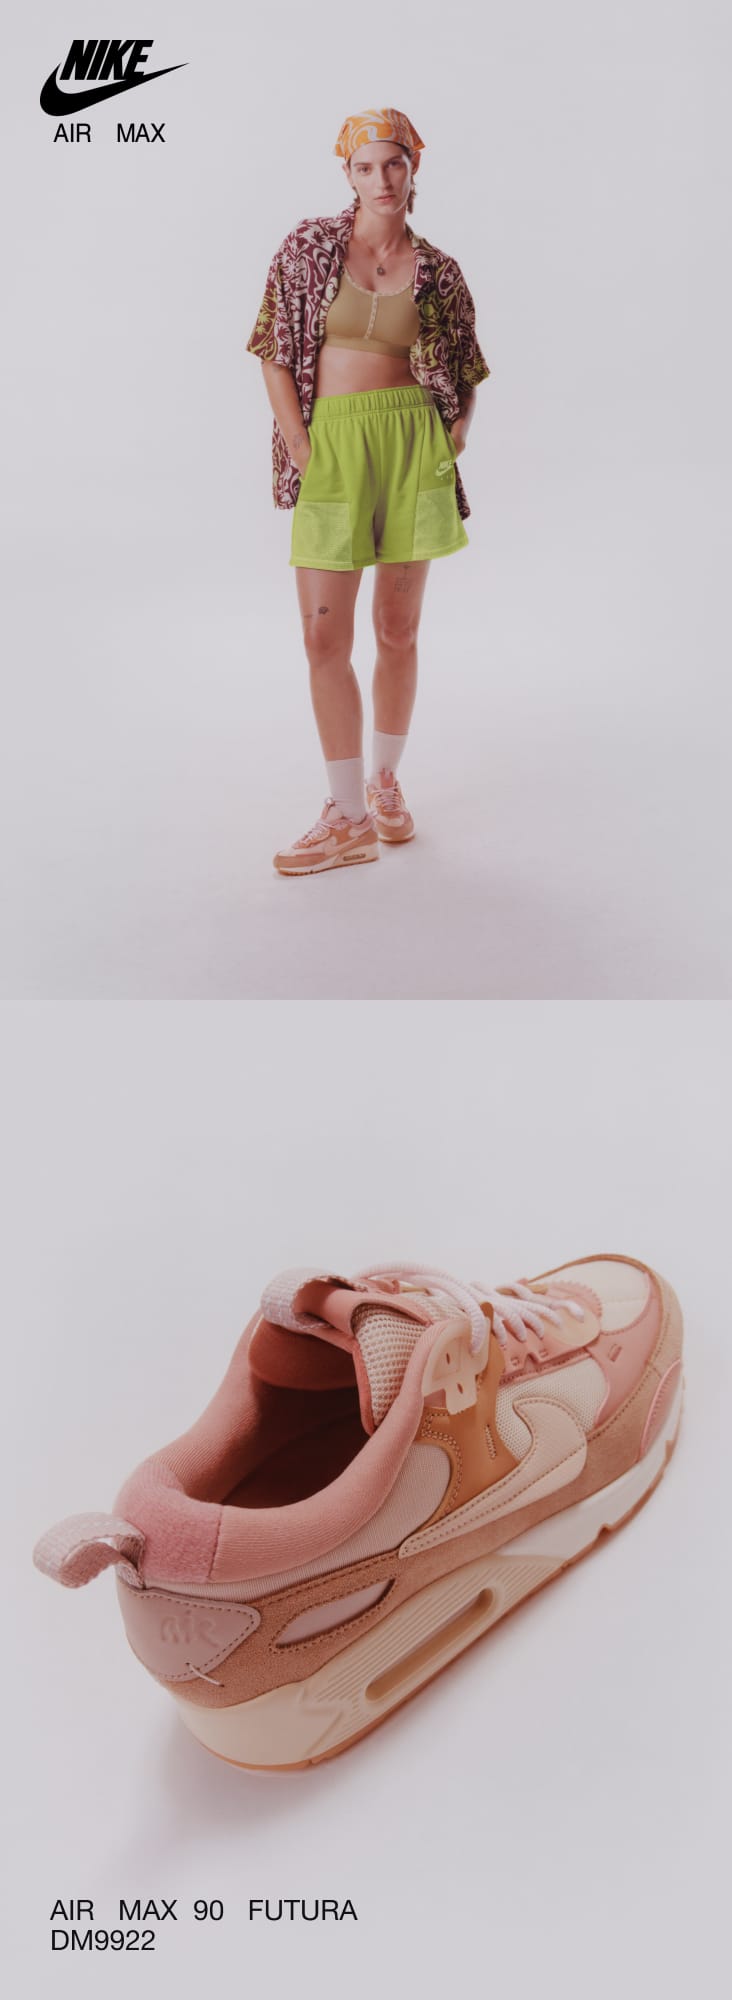 Calzado para mujer Nike Air Max 90 Futura